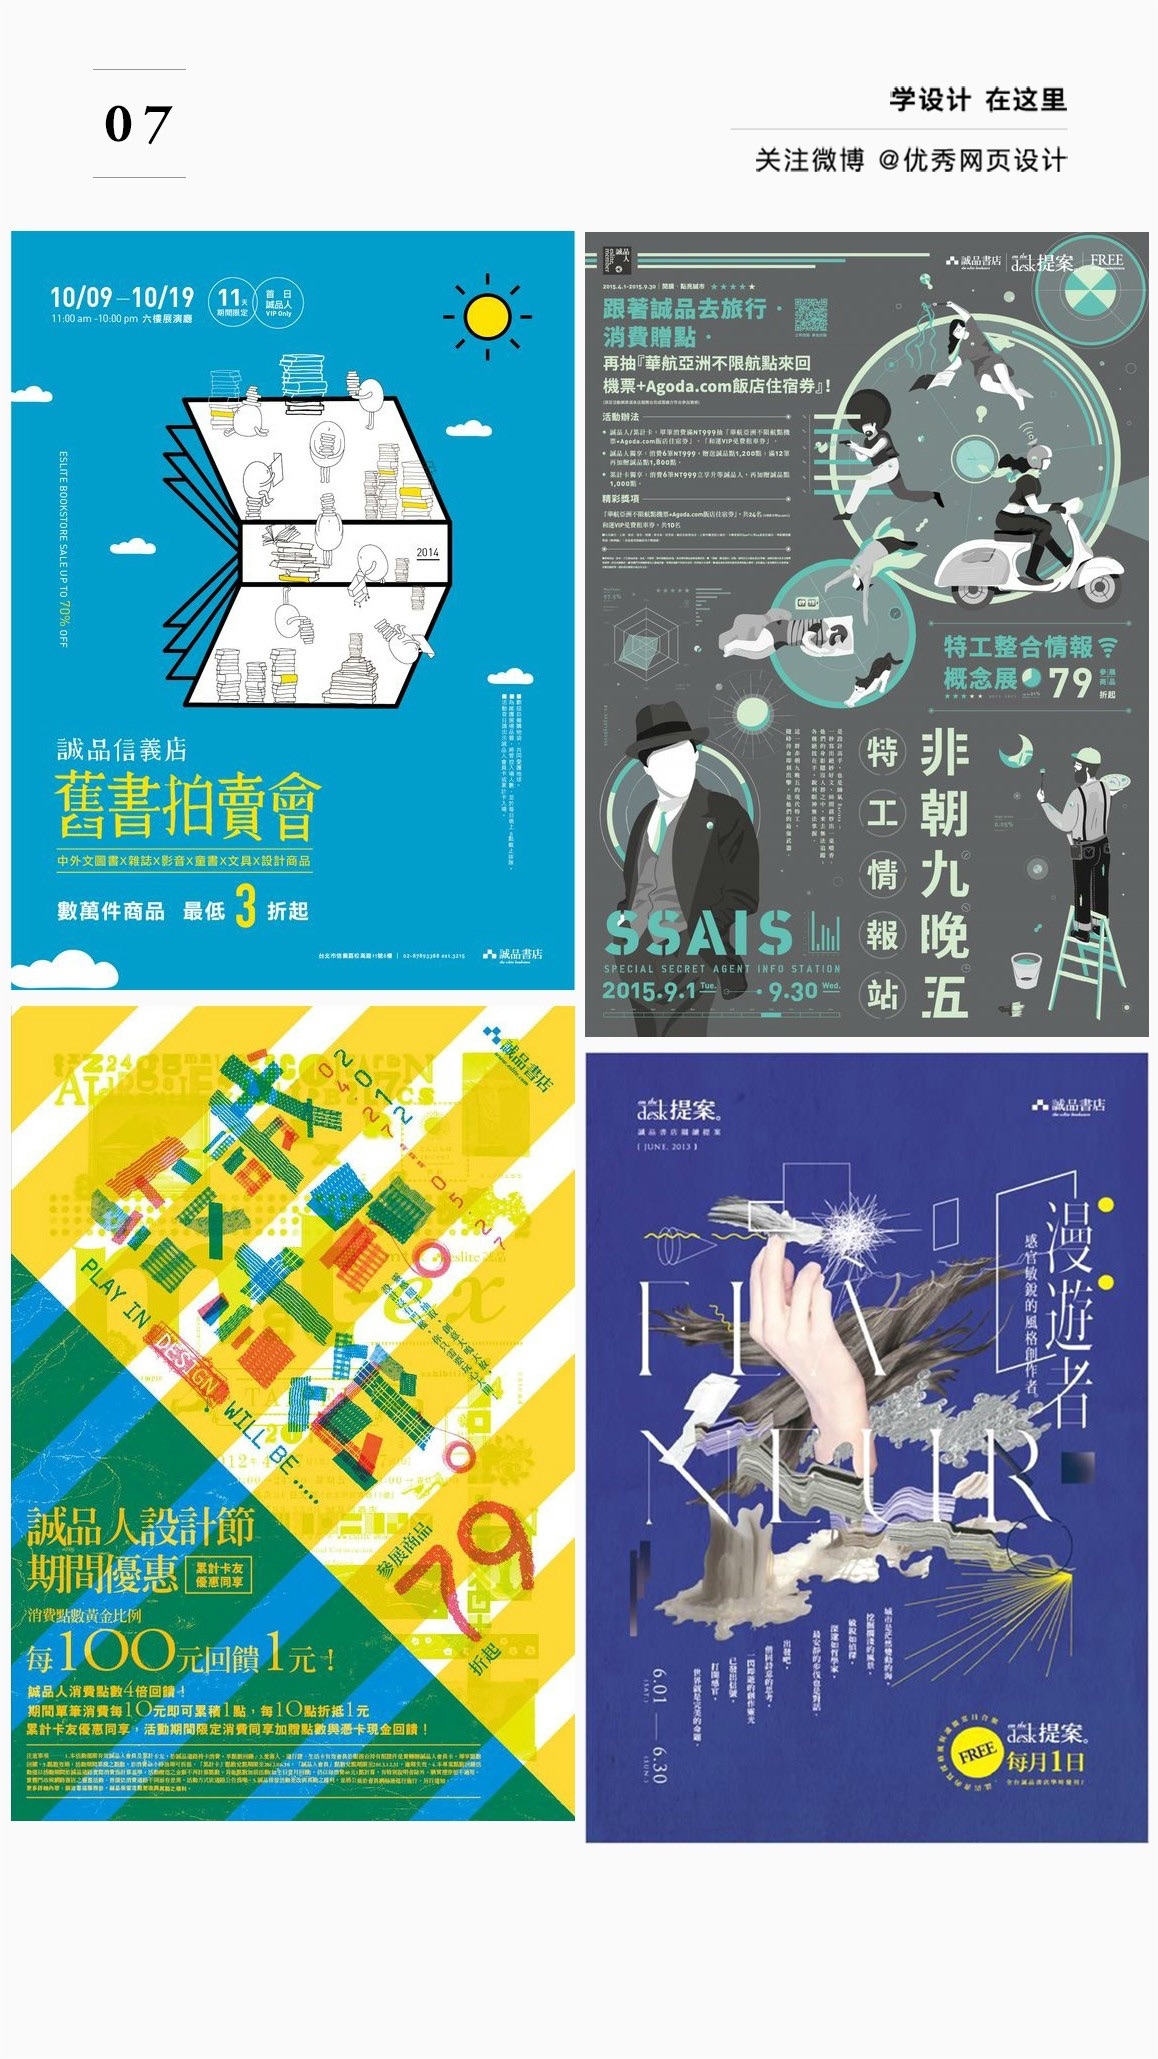 几十张汉字海报的布局排版形式